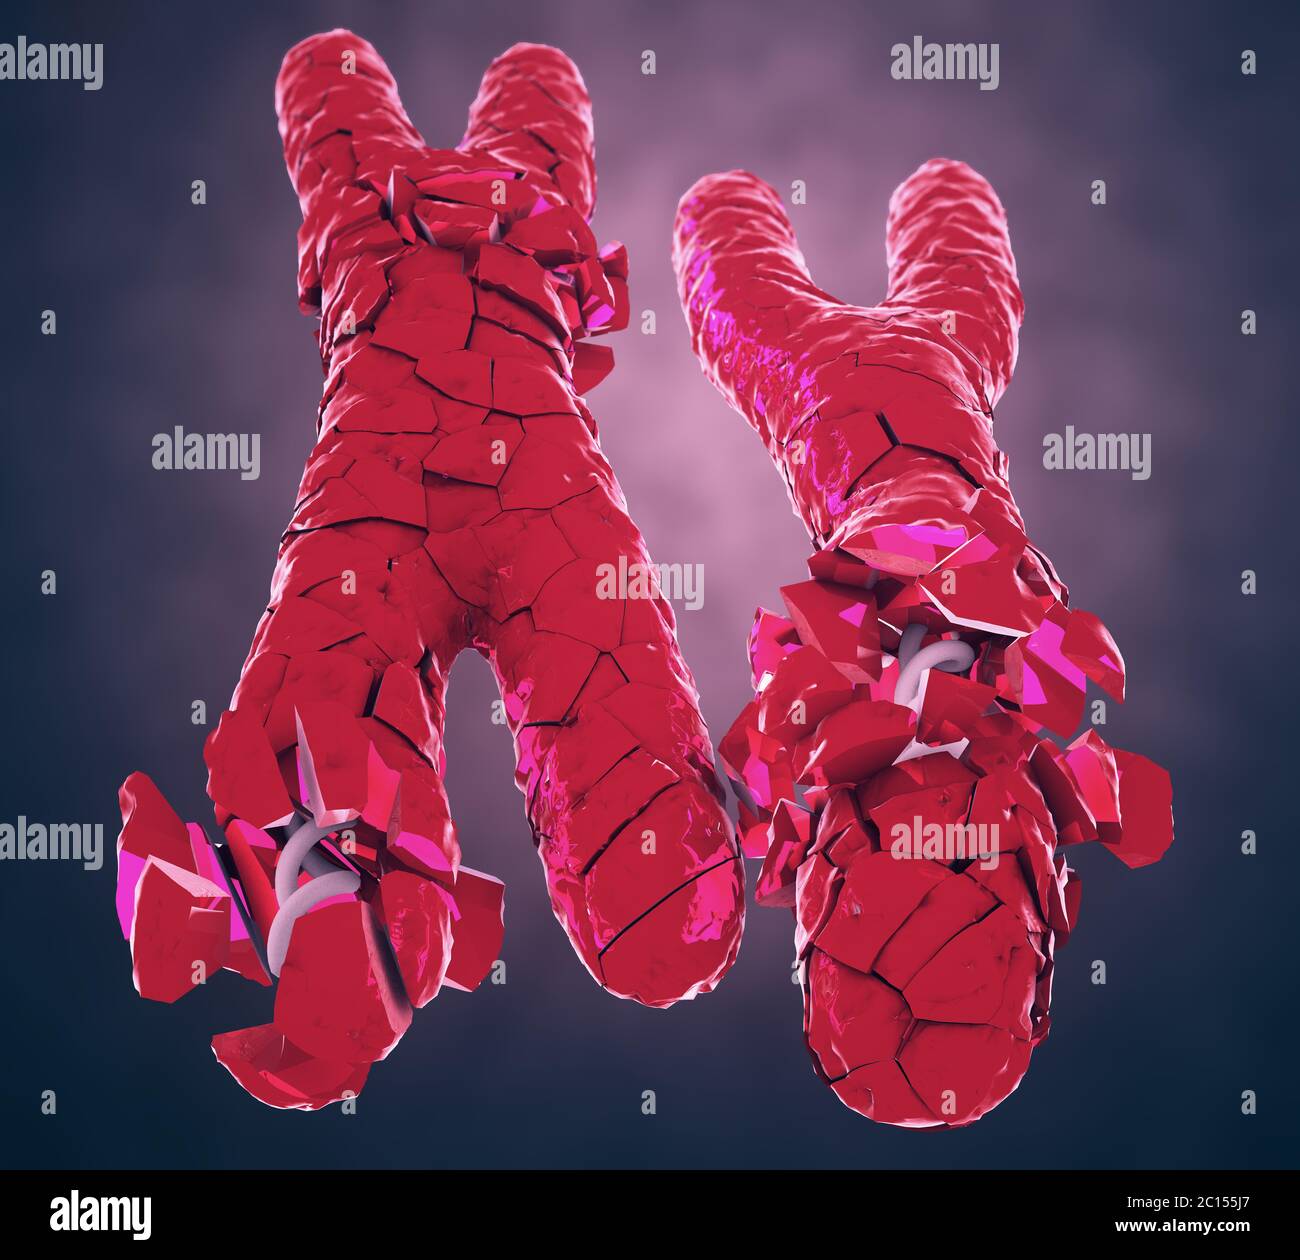 Ilustración 3d De Rota O Desertado De Color Rojo De Los Cromosomas X E Y Fotografía De Stock Alamy